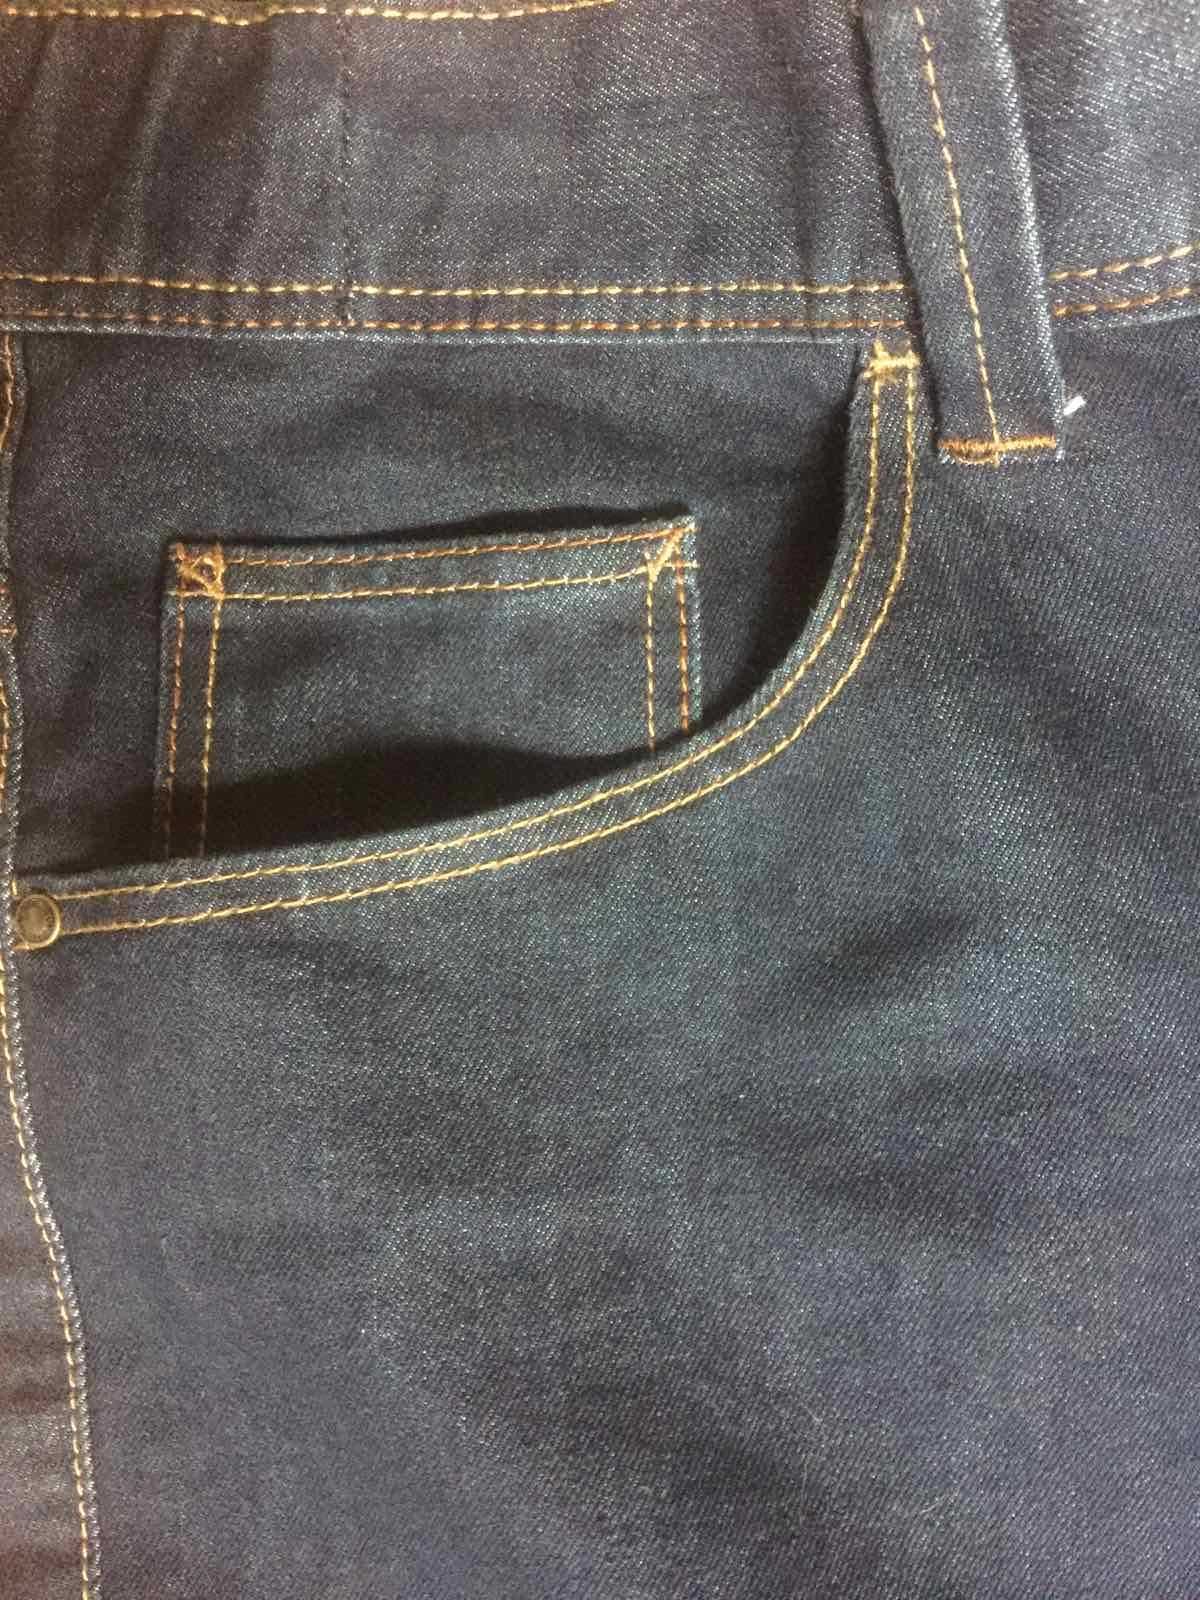 Чоловічі джинси KIABI якісні оригінал недорого р. 56